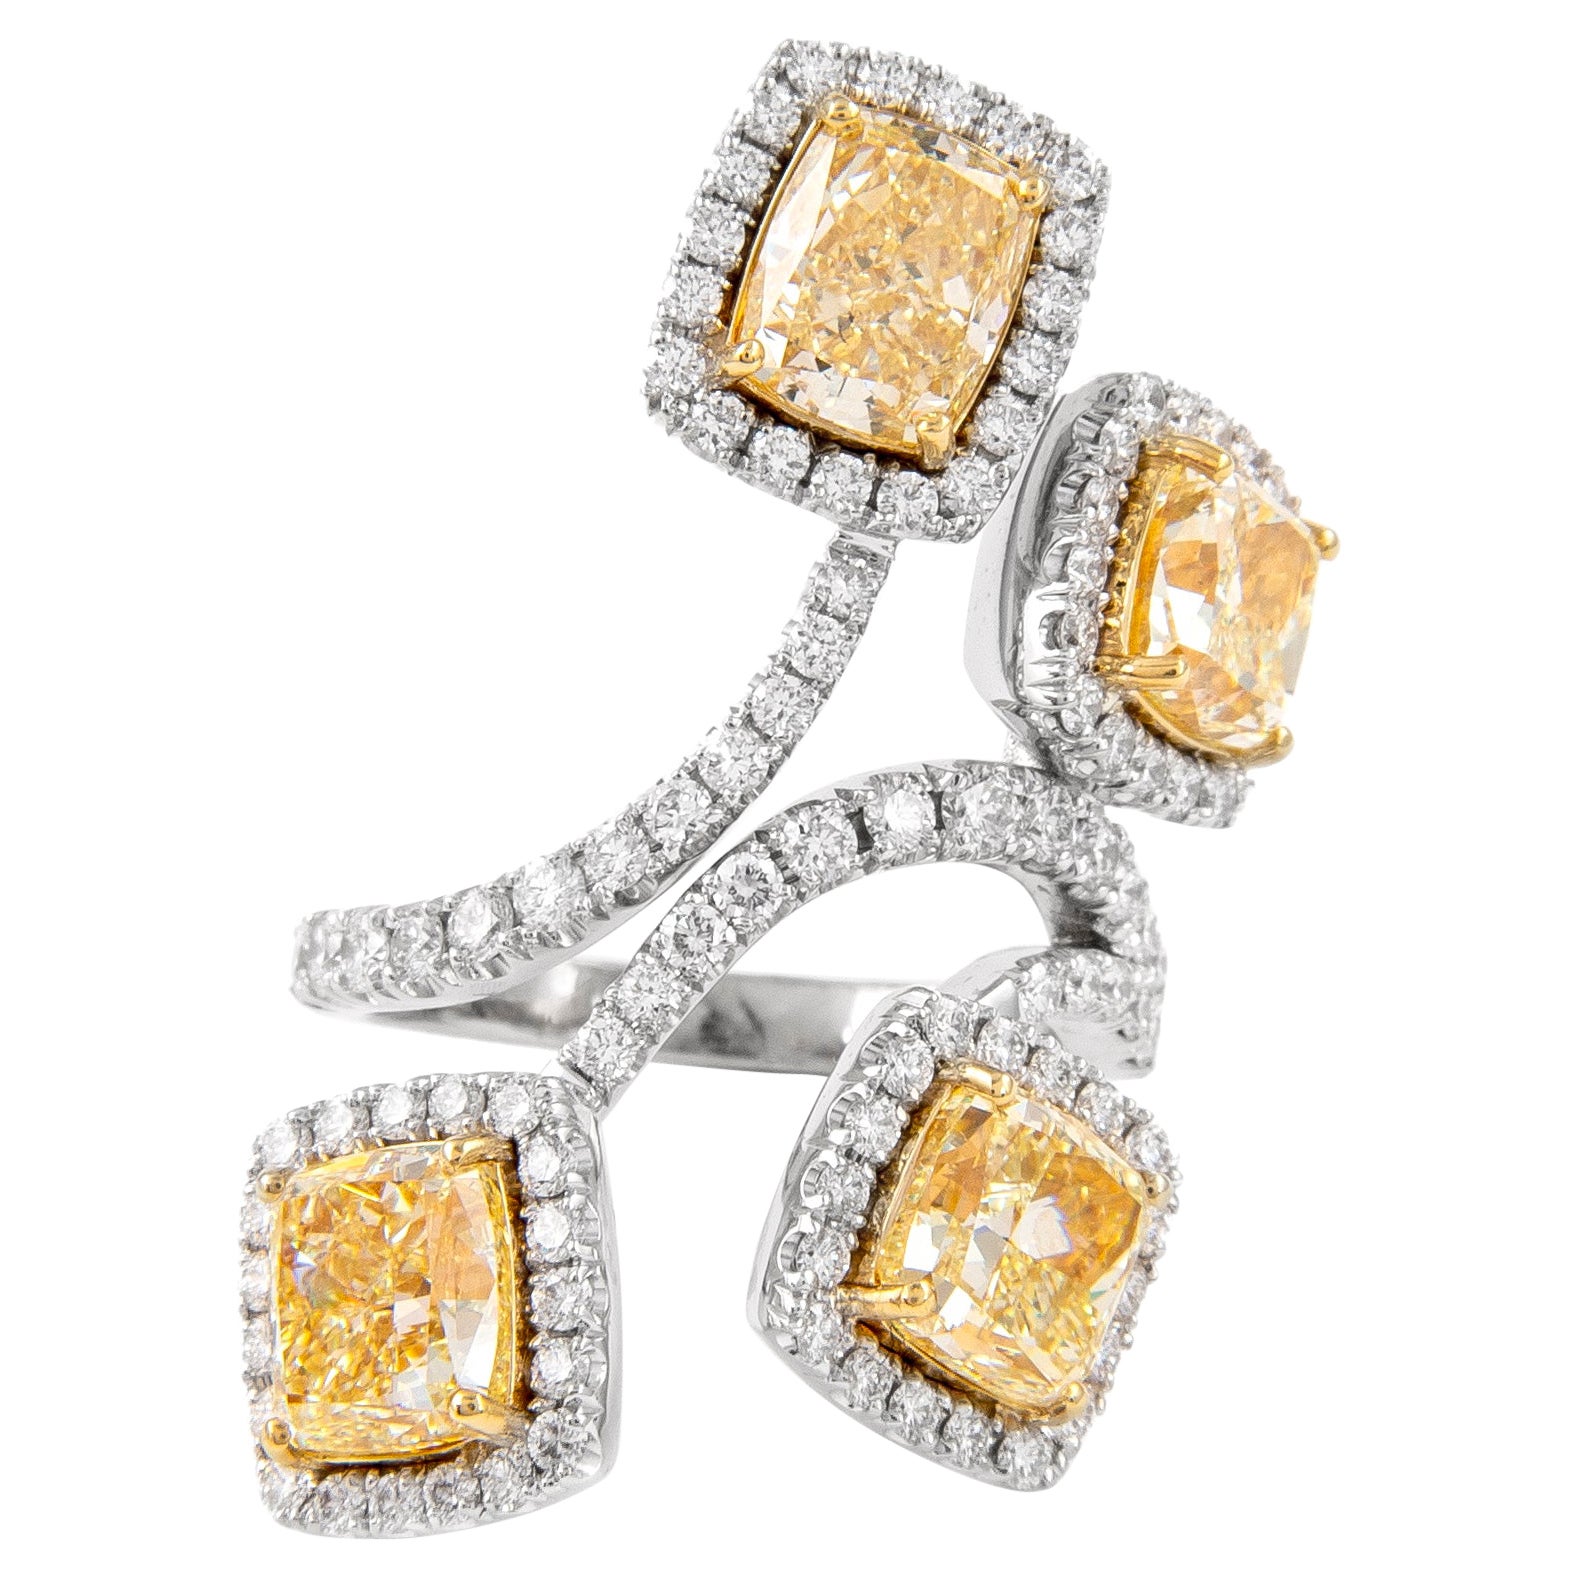 Alexander GIA Certified 8.15 Carat Yellow YZ Diamond Ring Cocktail Ring 18k Gold